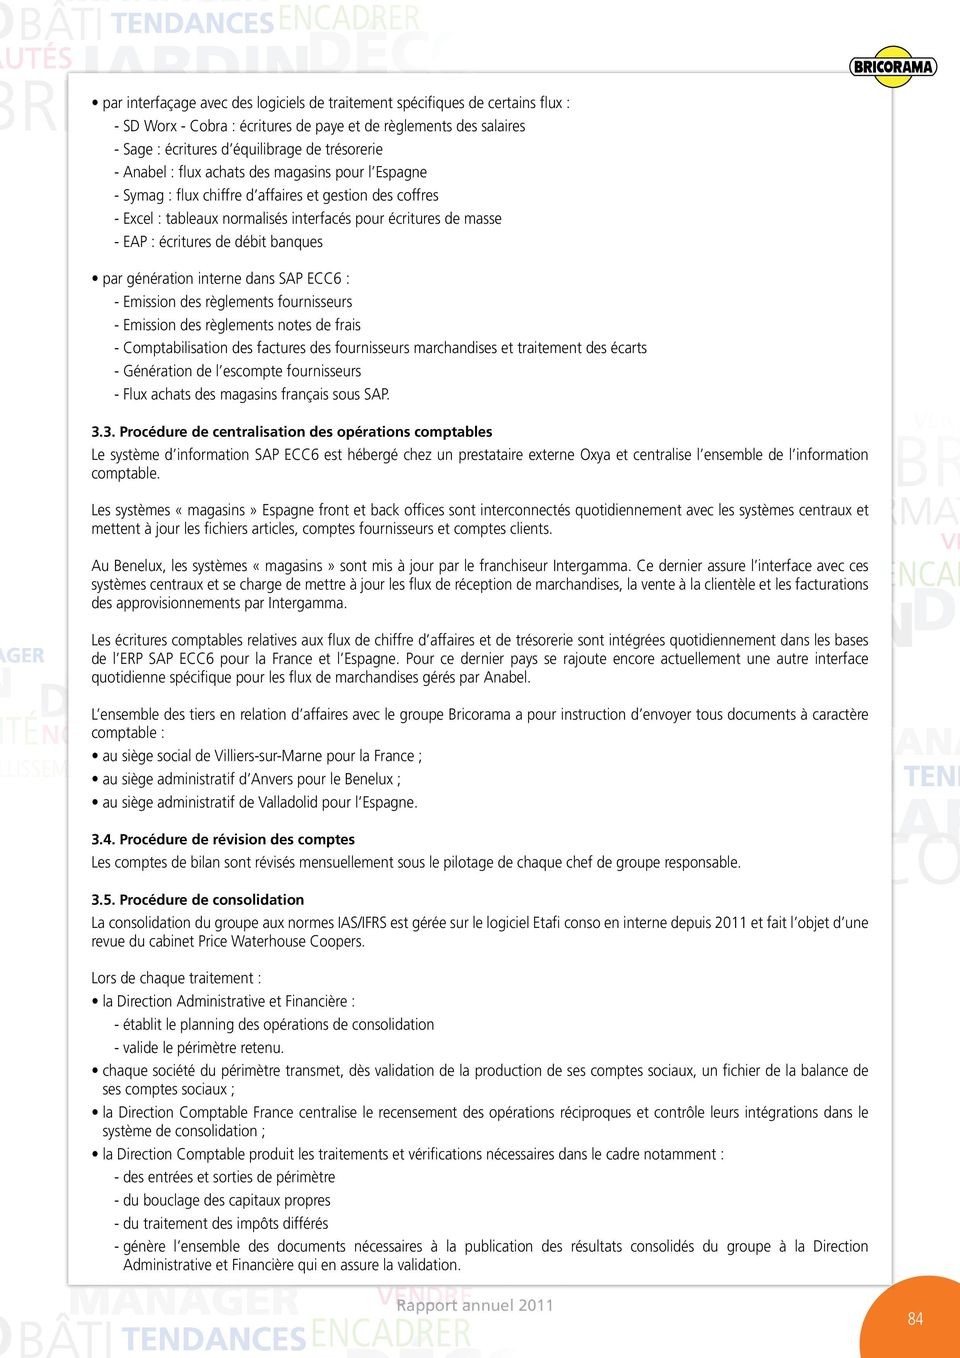 notes de frais - Comptabilisation des factures des fournisseurs marchandises et traitement des écarts - Génération de l escompte fournisseurs - Flux achats des magasins français sous SAP. 3.